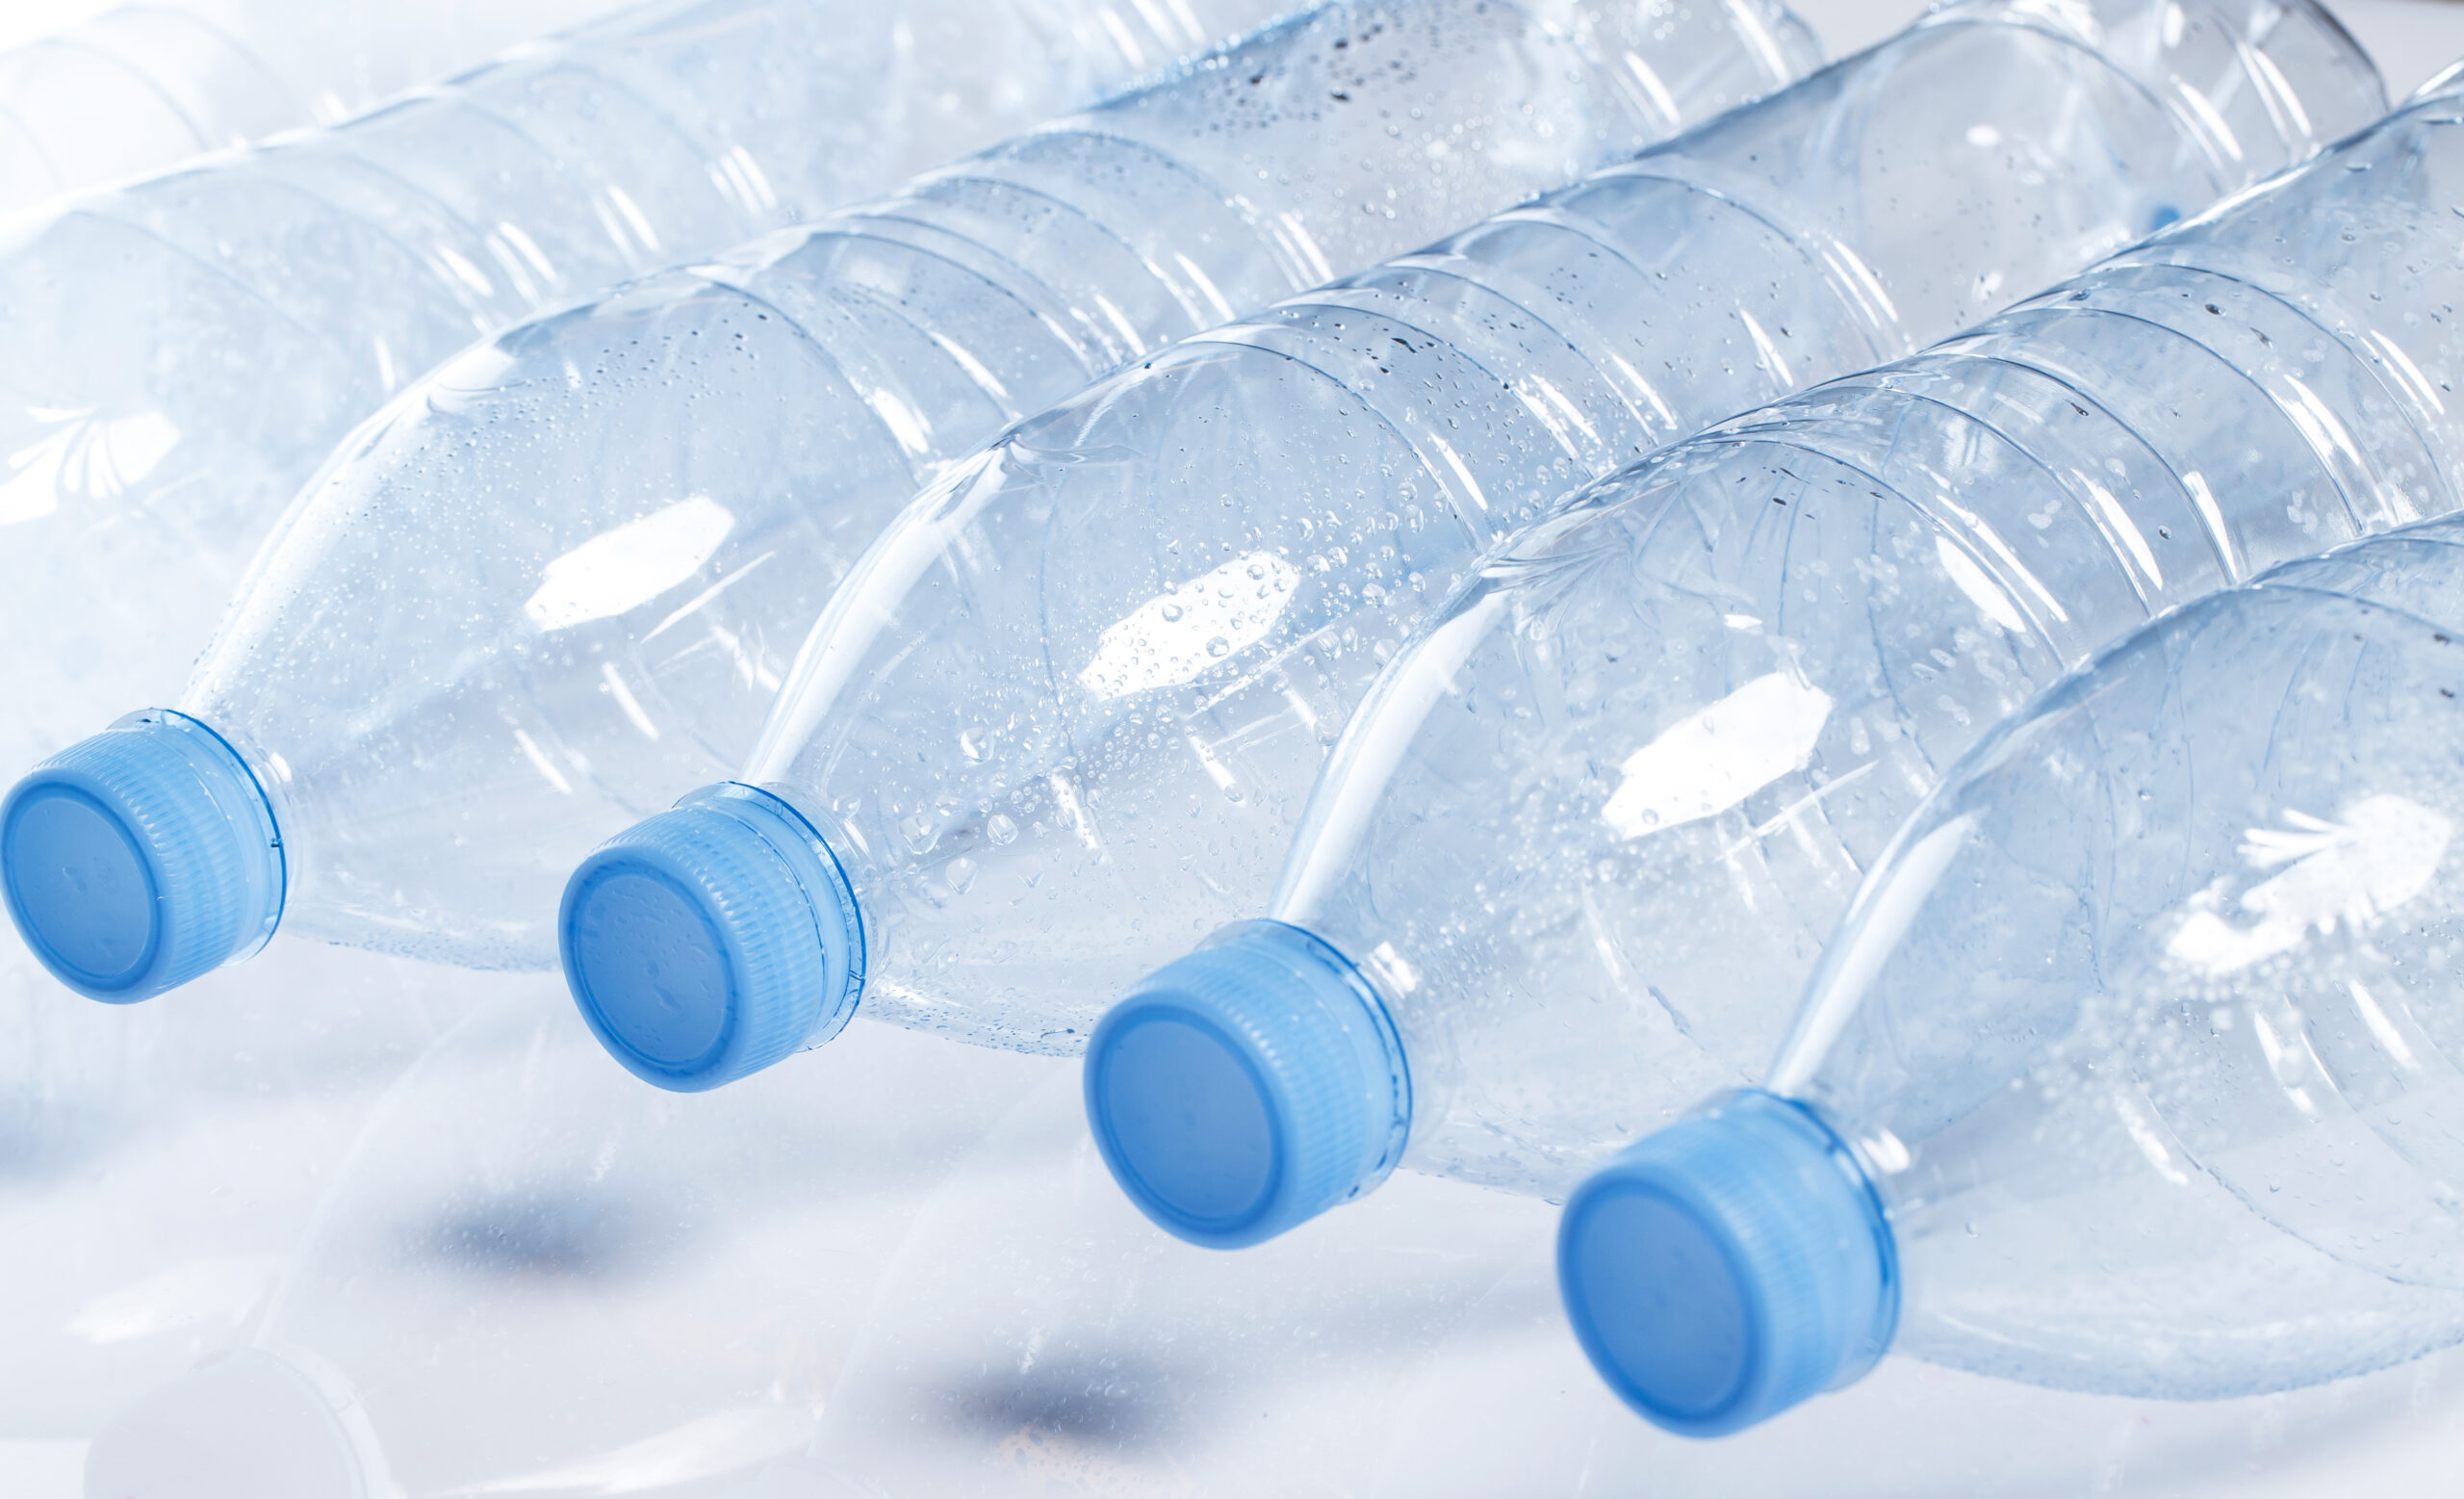 Botellas y garrafas de plástico para aceite: todo lo que debes saber